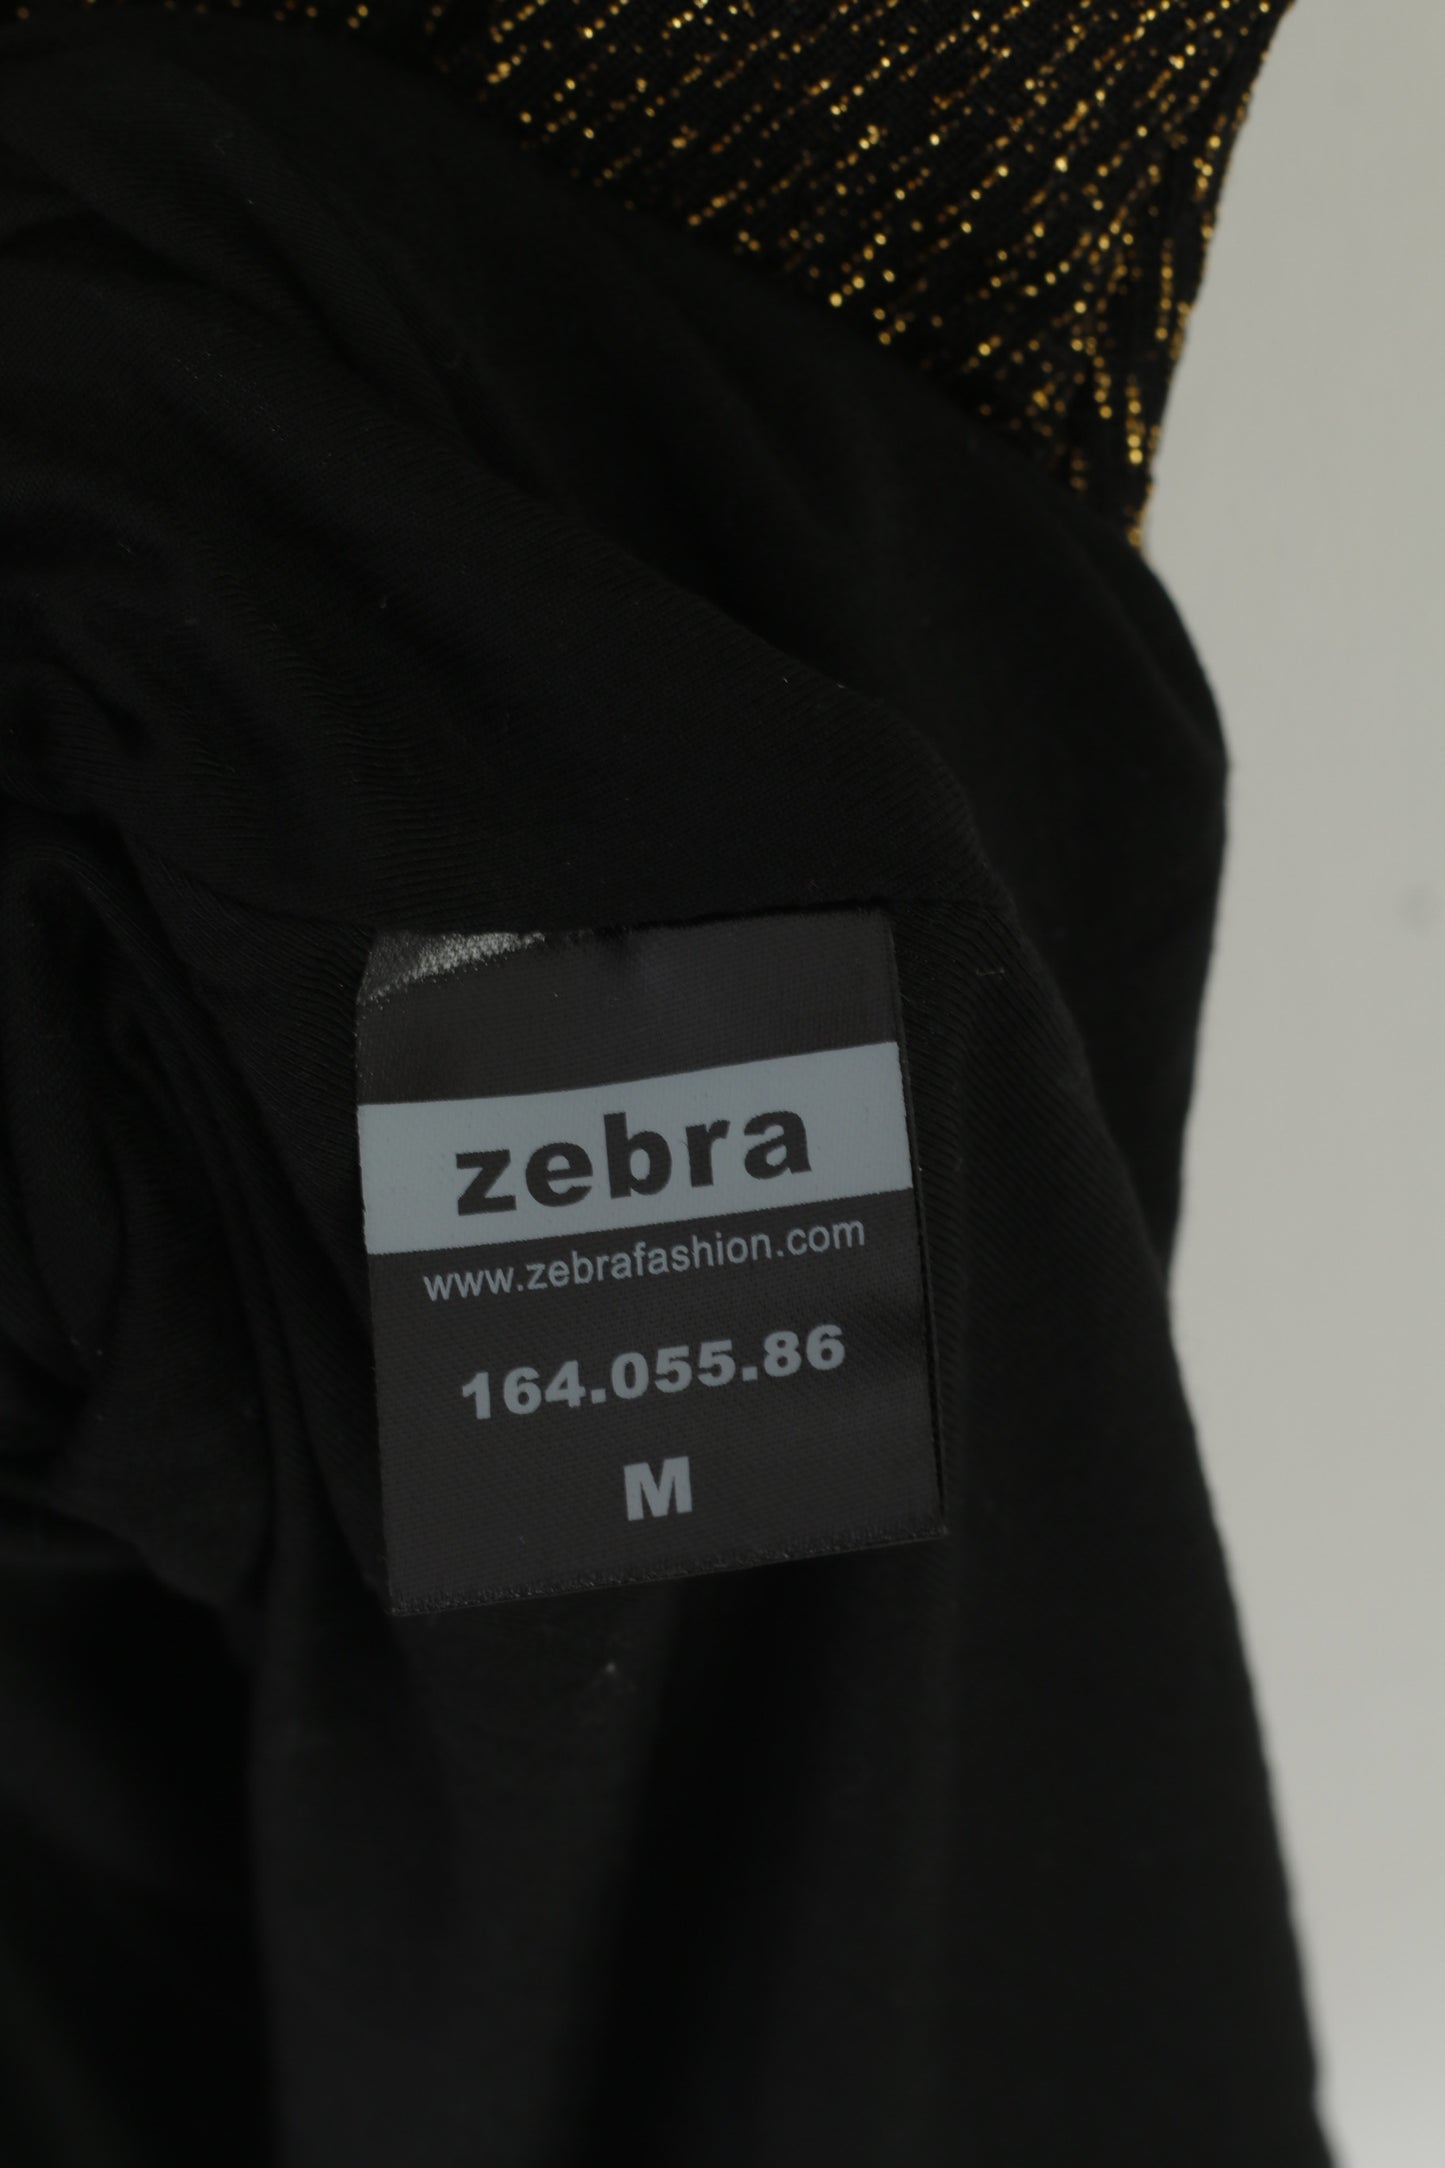 Zebra Women M Dress Black Gold Elegant Sleeveless